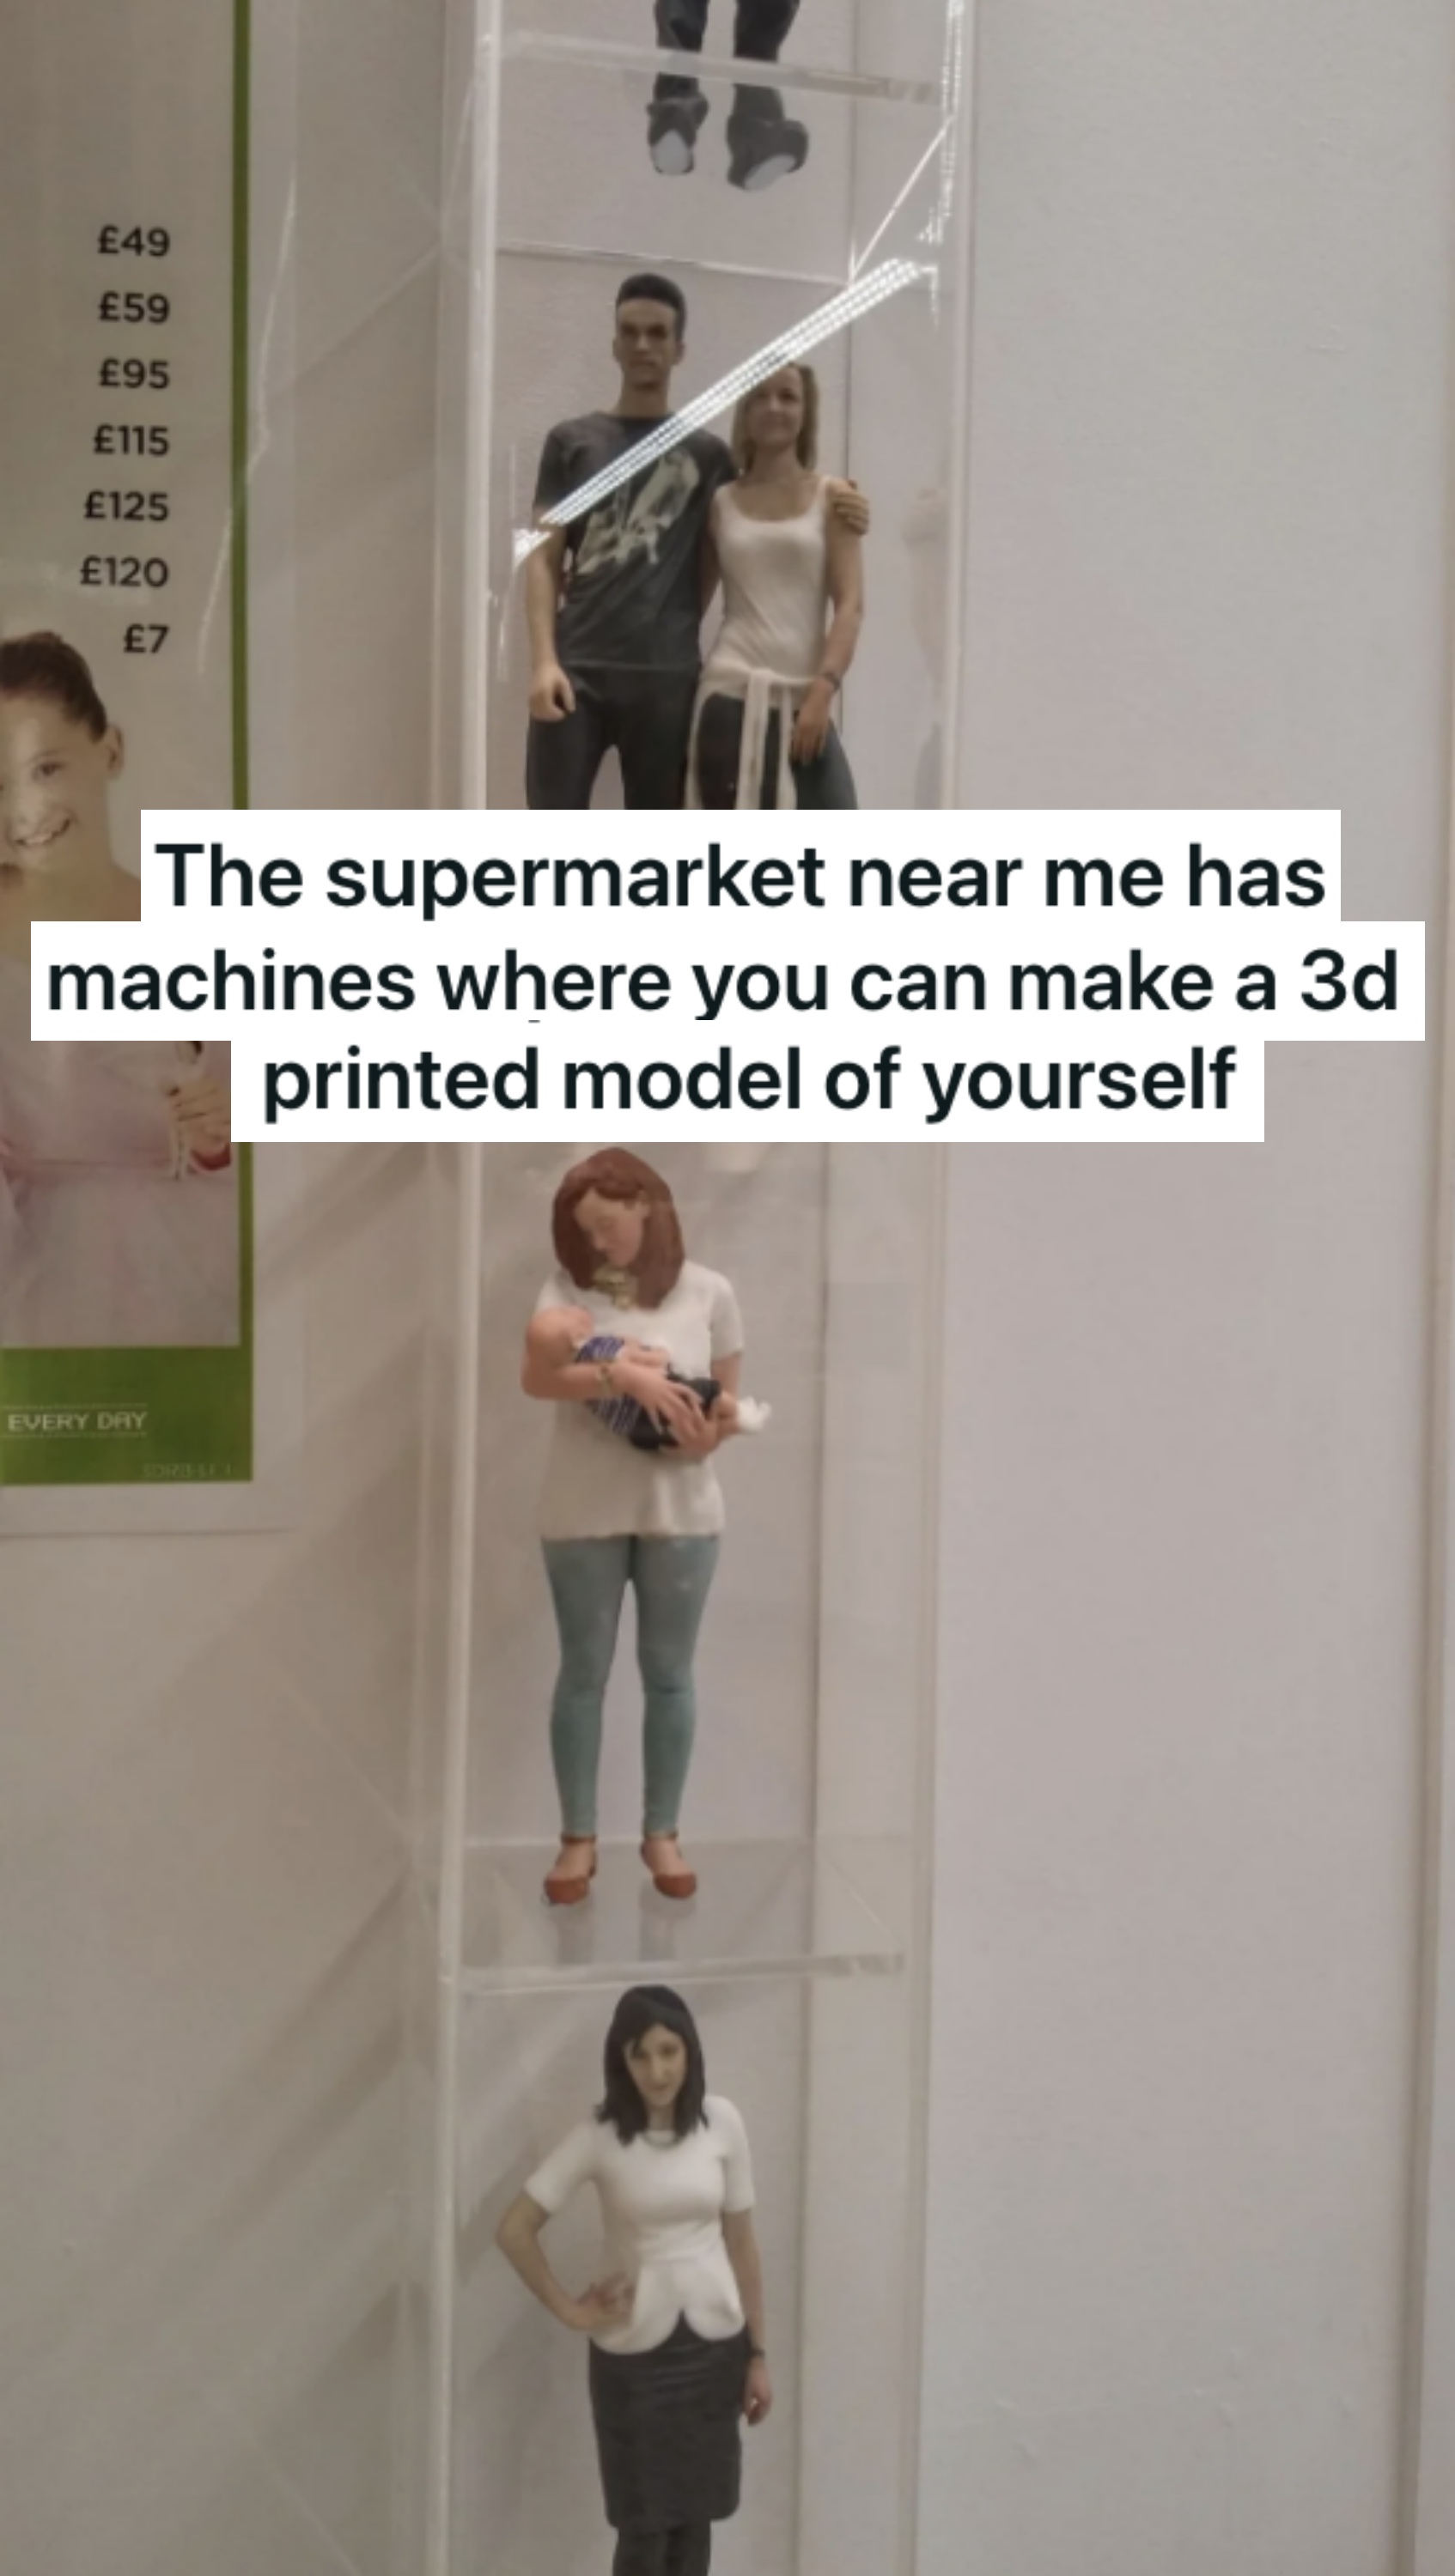 3D printed models of people